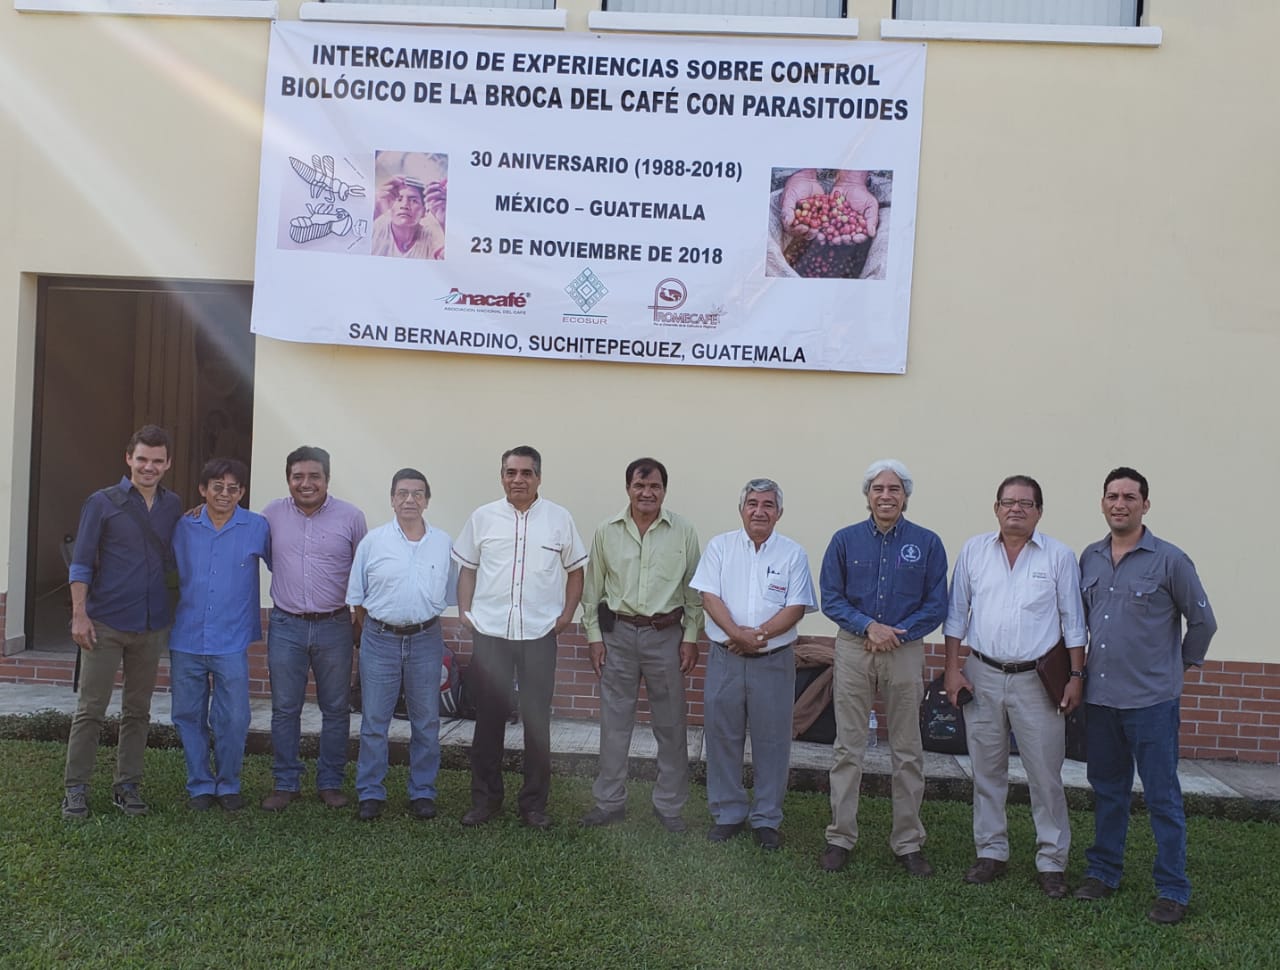 Intercambio de experiencias sobre control biológico de la broca del café con parasitoides: 30 aniversario